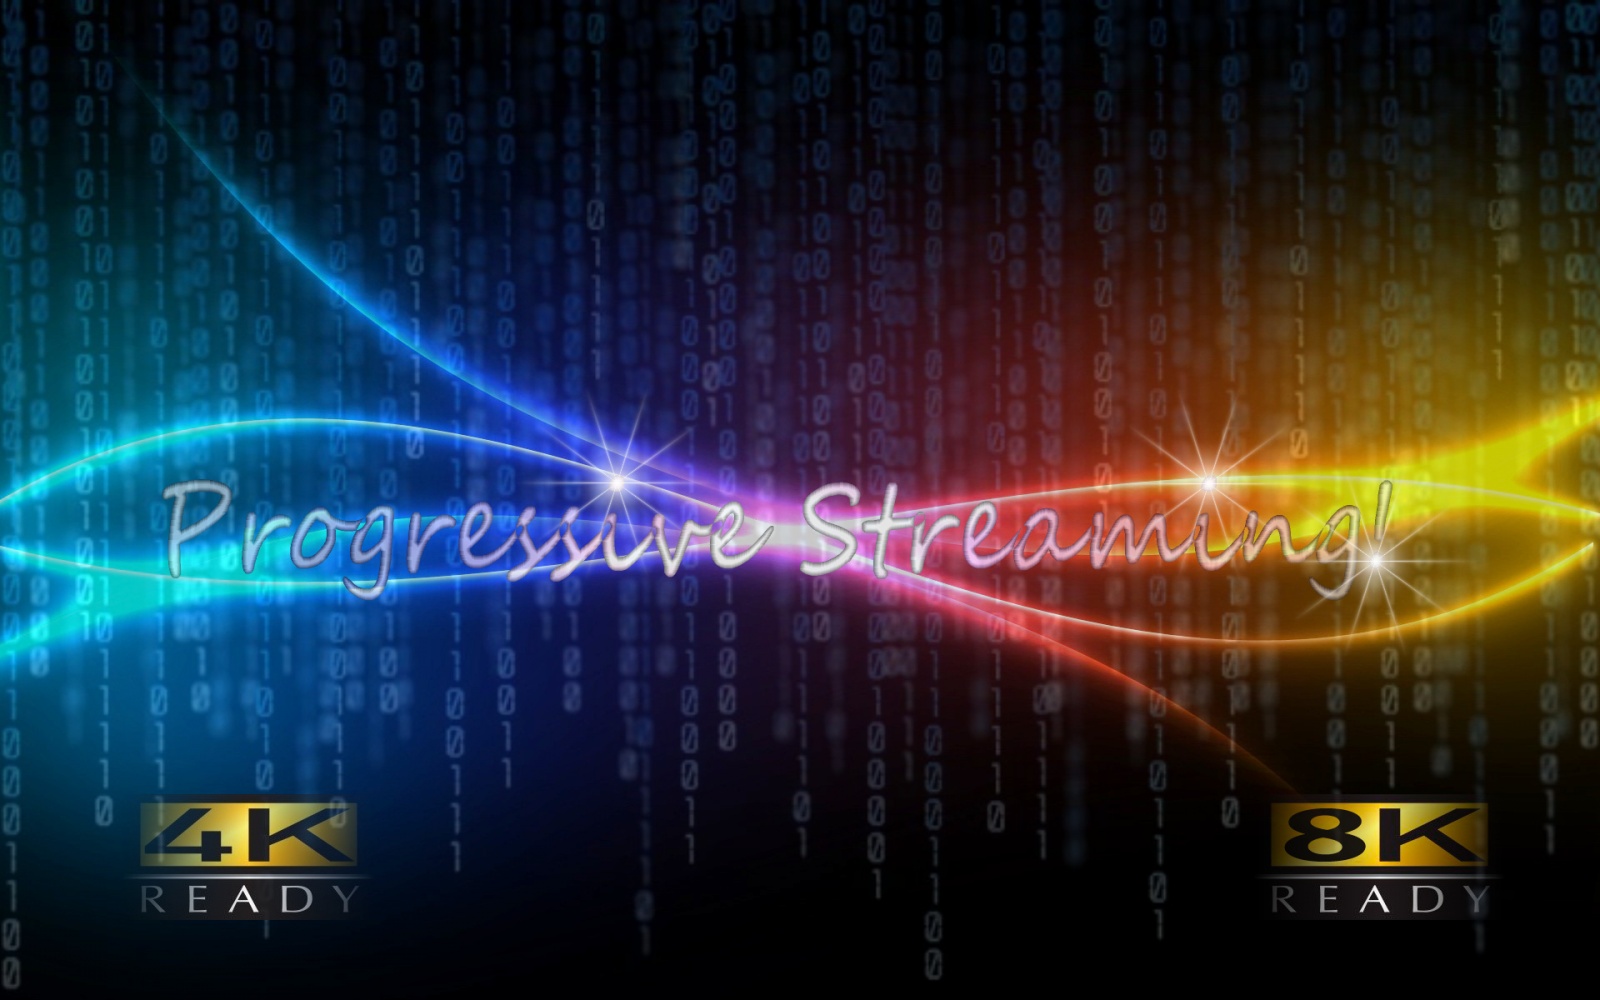 Технология Progressive Streaming, или как смотреть 4k видео по сети, без фризов - 1